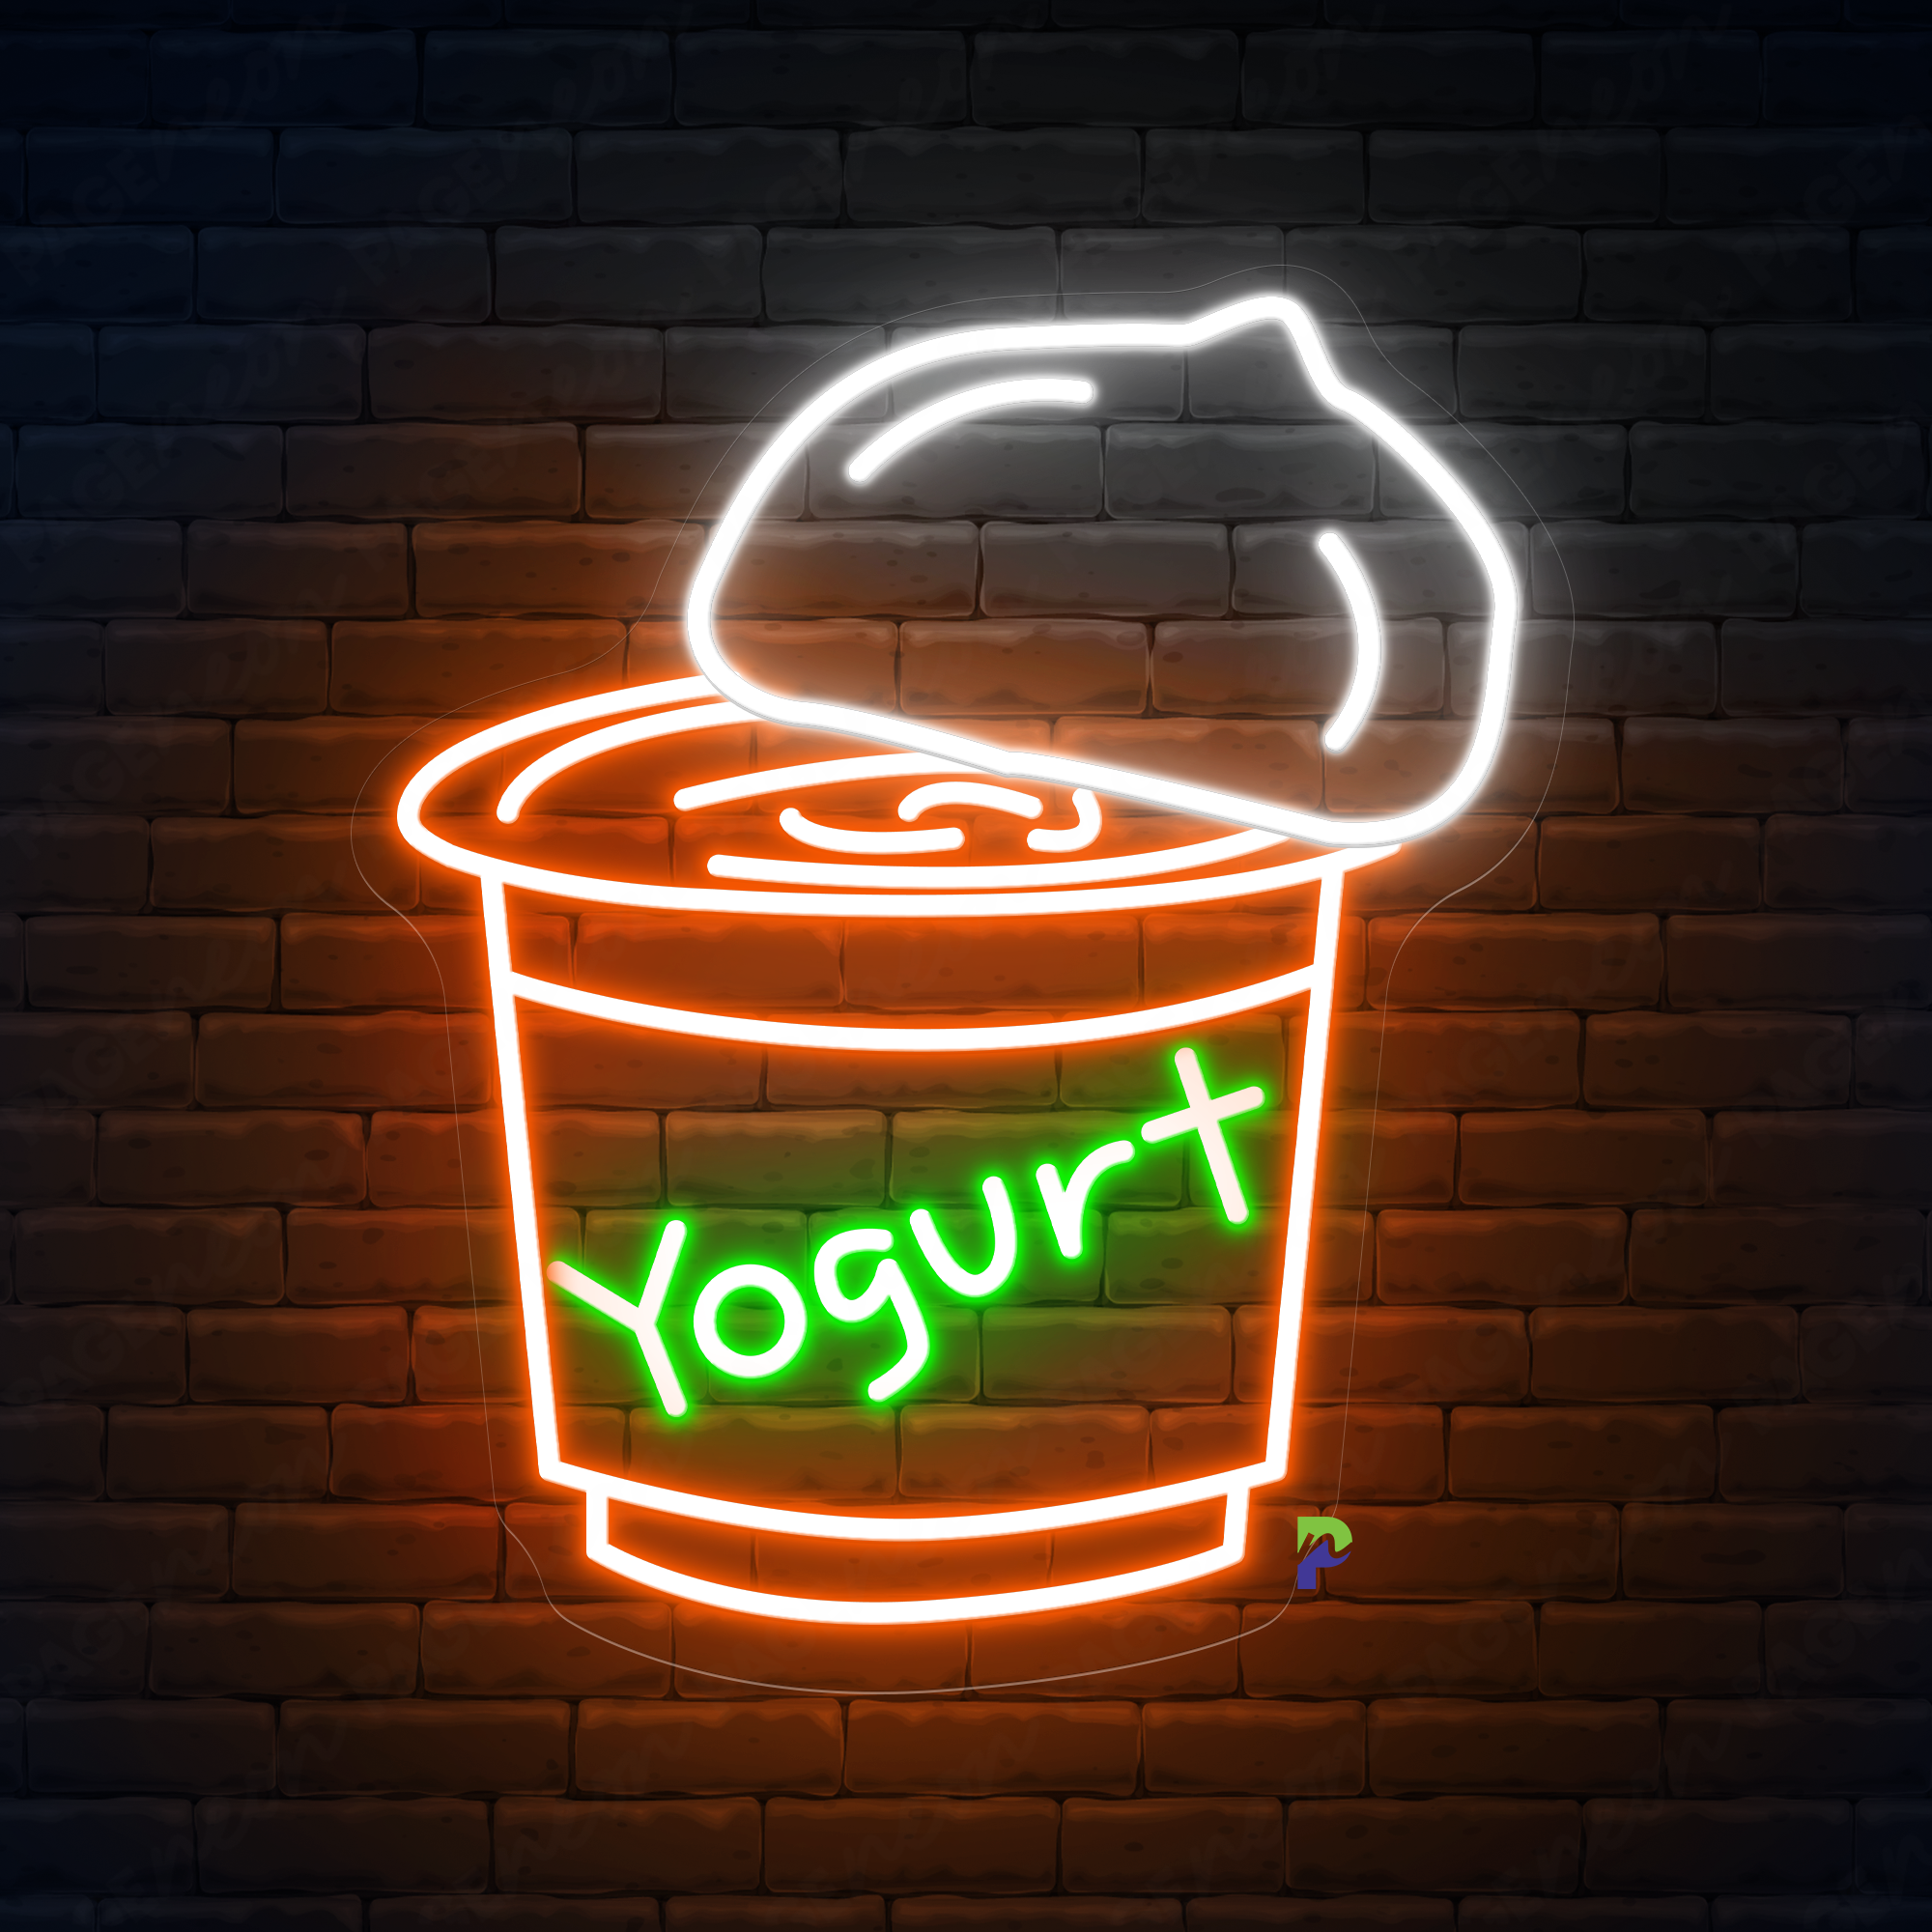 Yogurt Neon Sign Led Light For Business